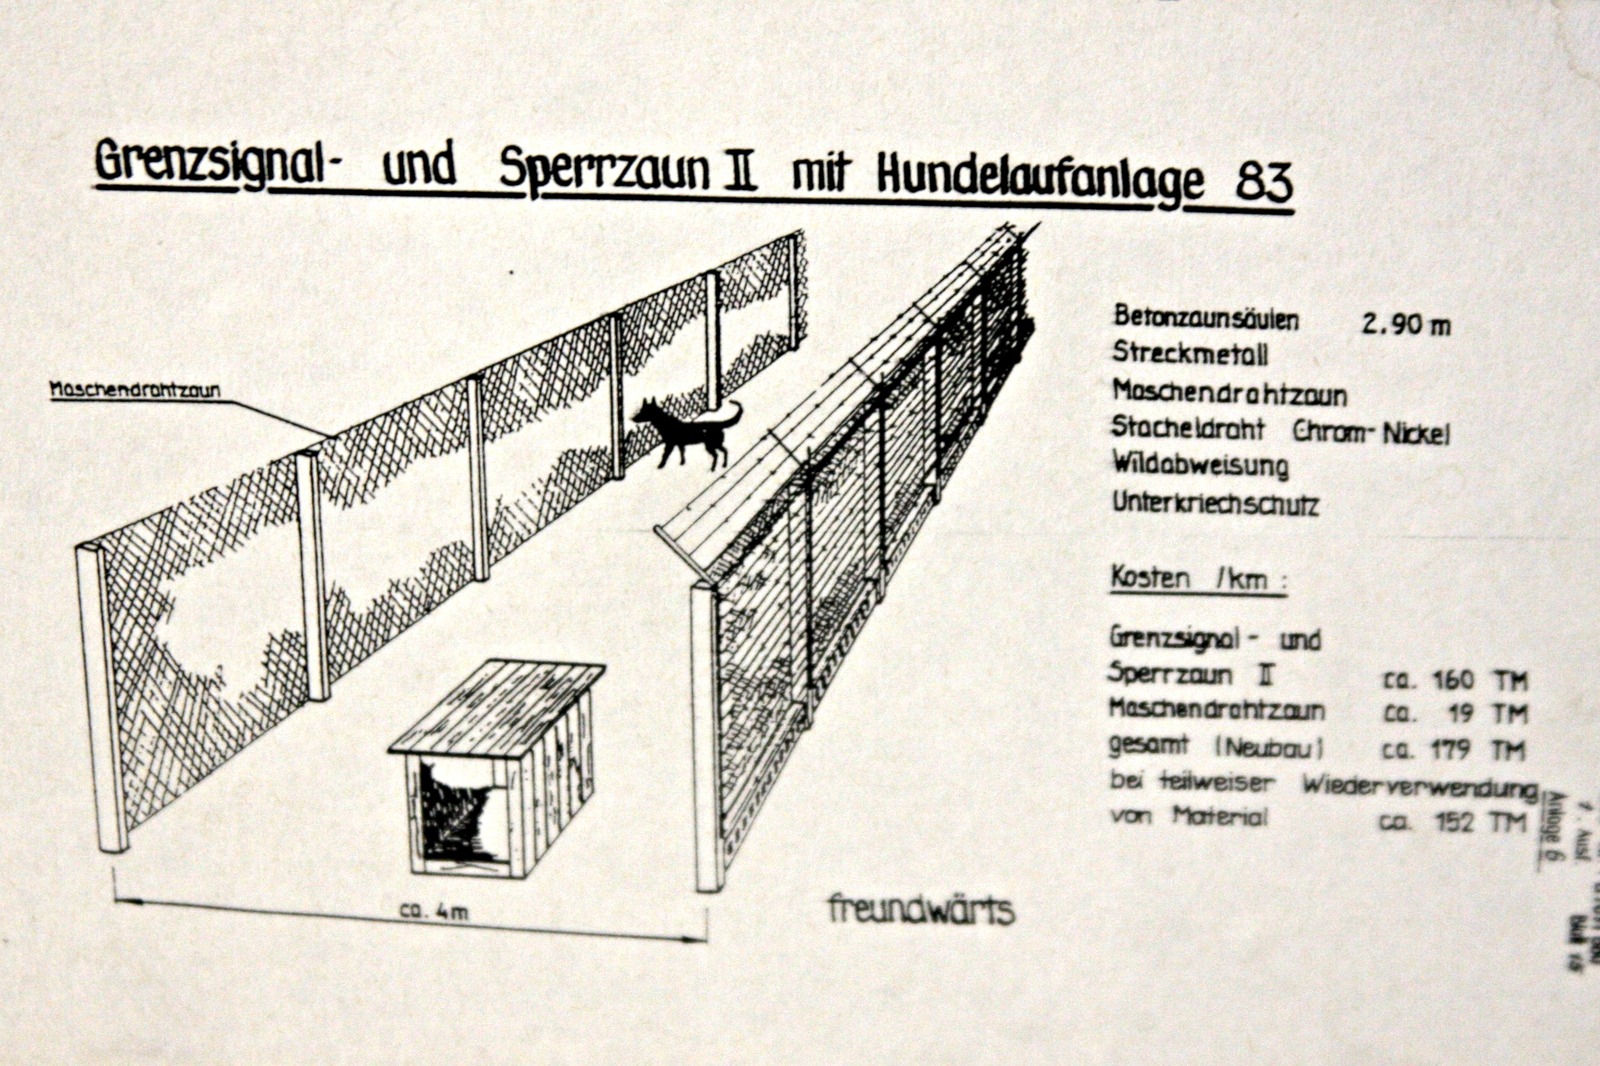 Berlin Wall dogs - Dog, Service dogs, Berlin Wall, GDR, Longpost